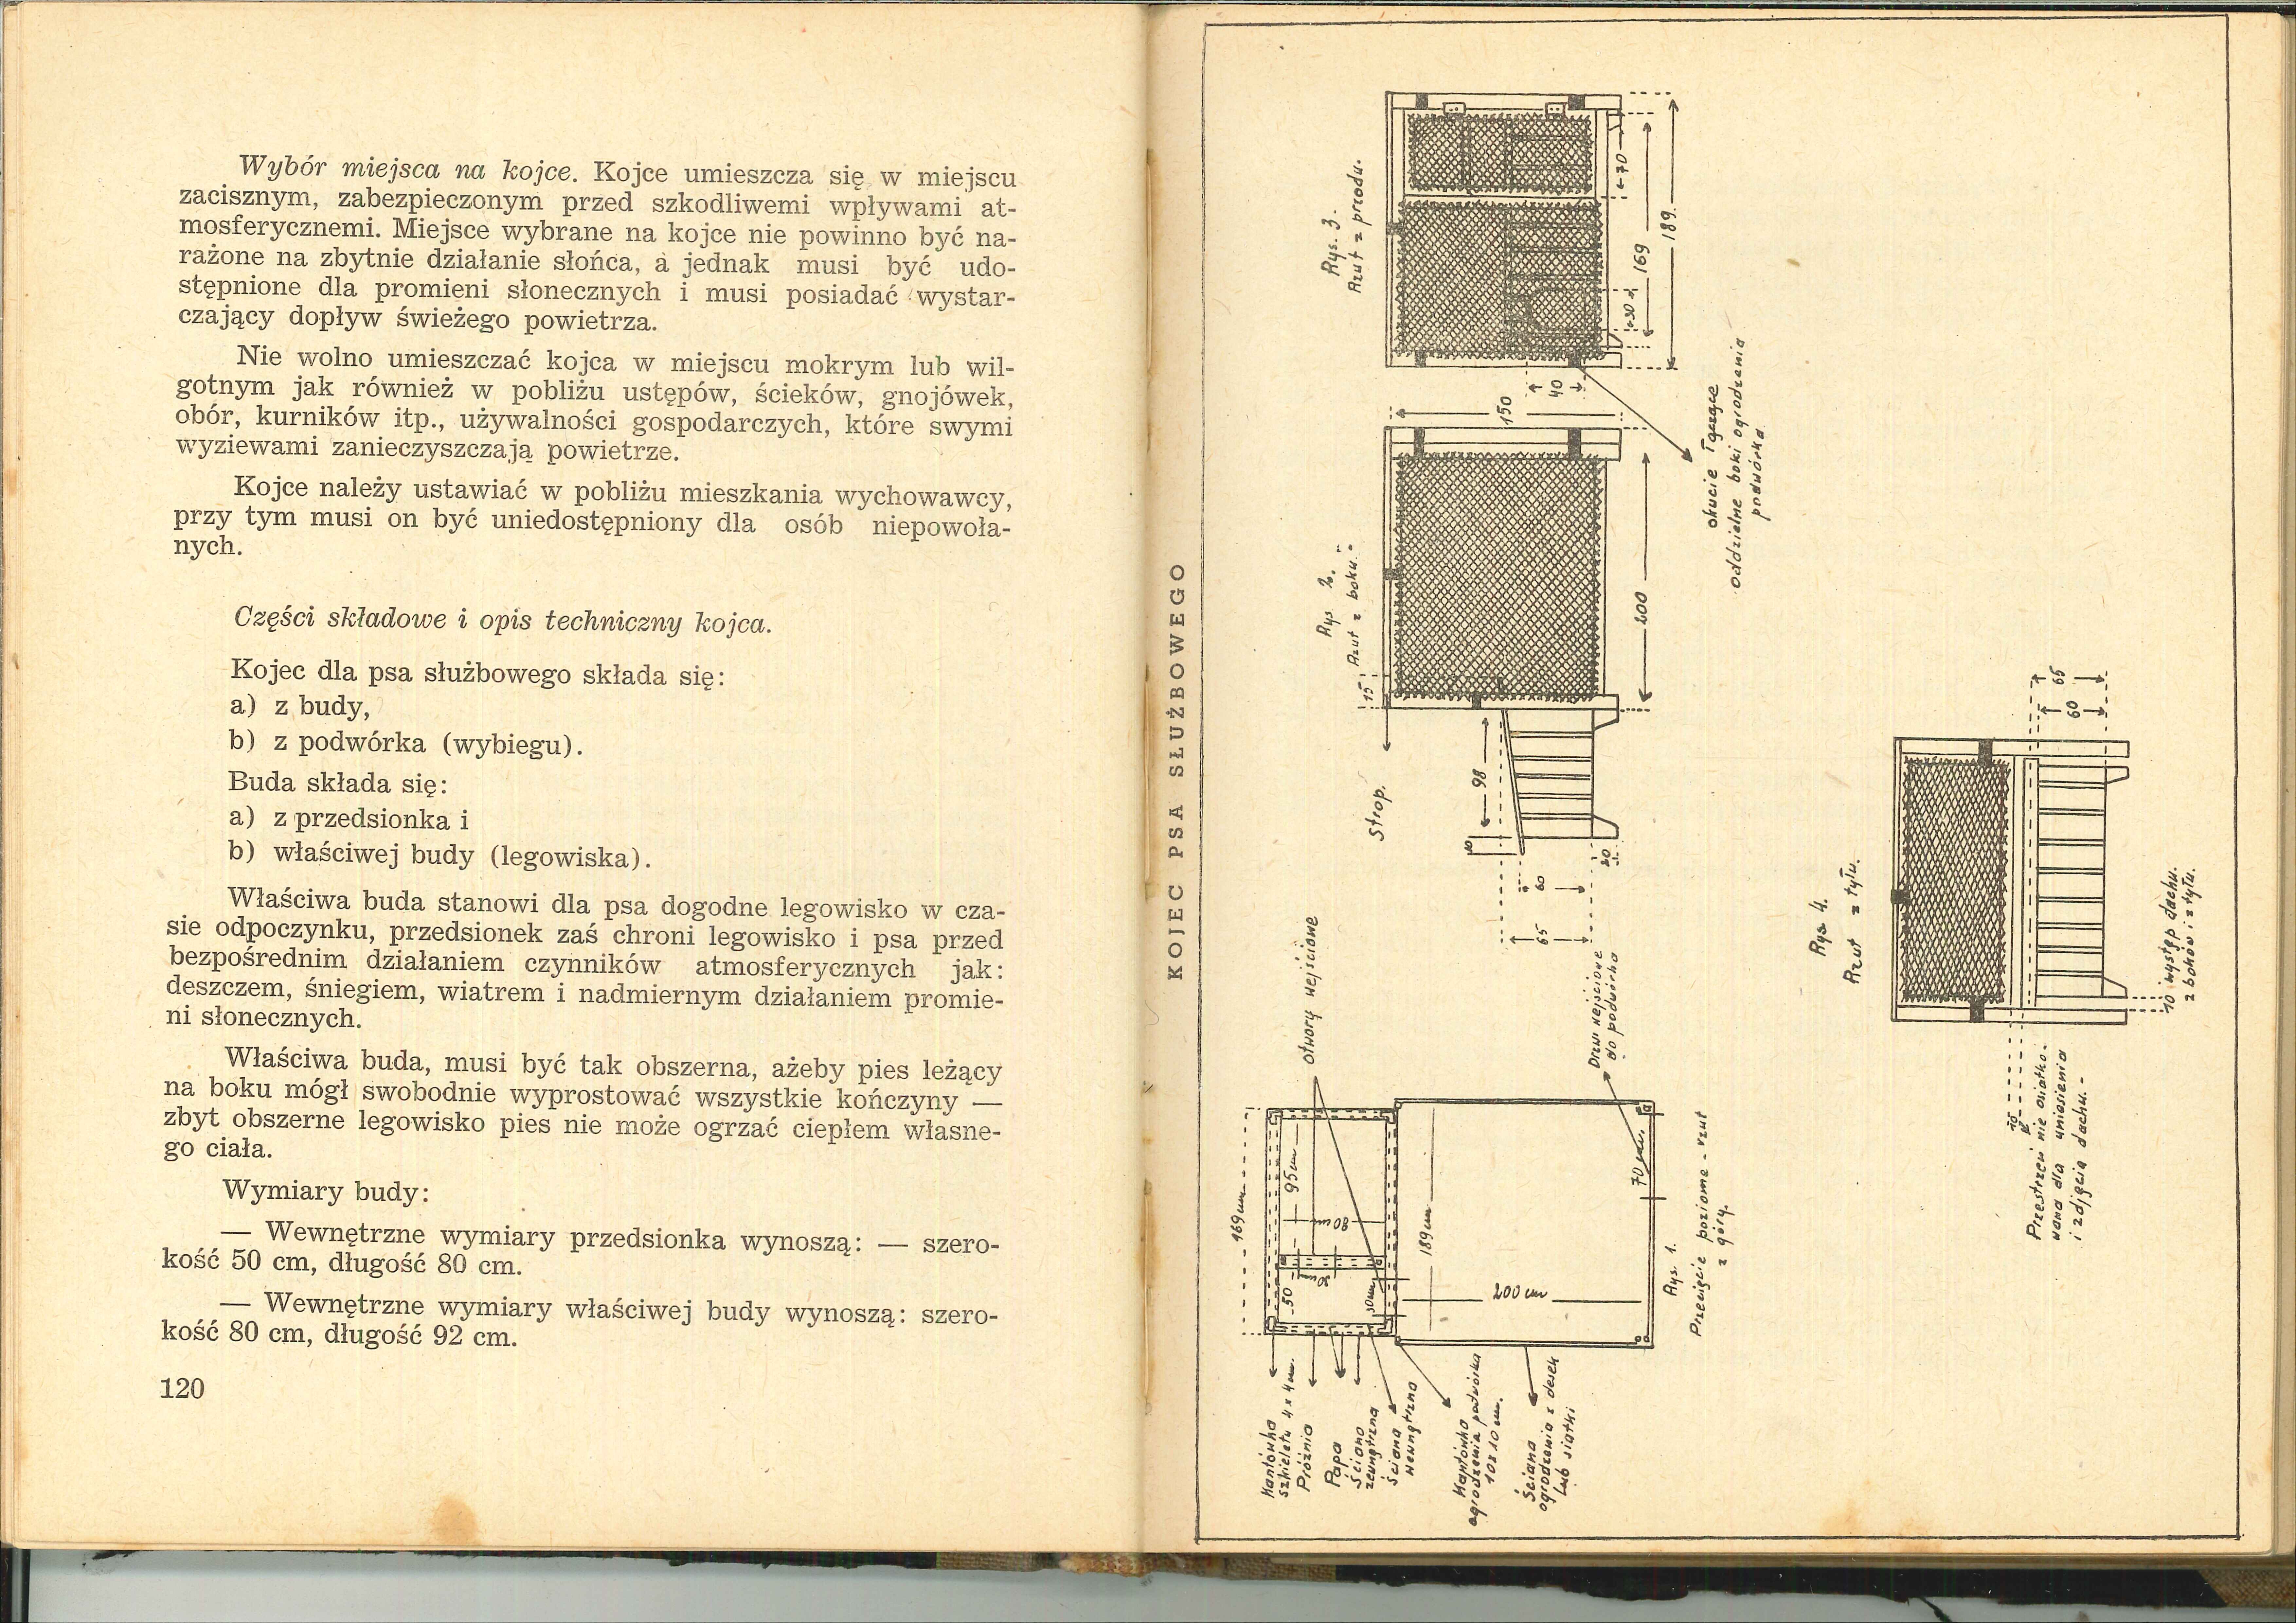 1951 MBP Pies służbowy podręcznik - 20130131052531846_0001.jpg